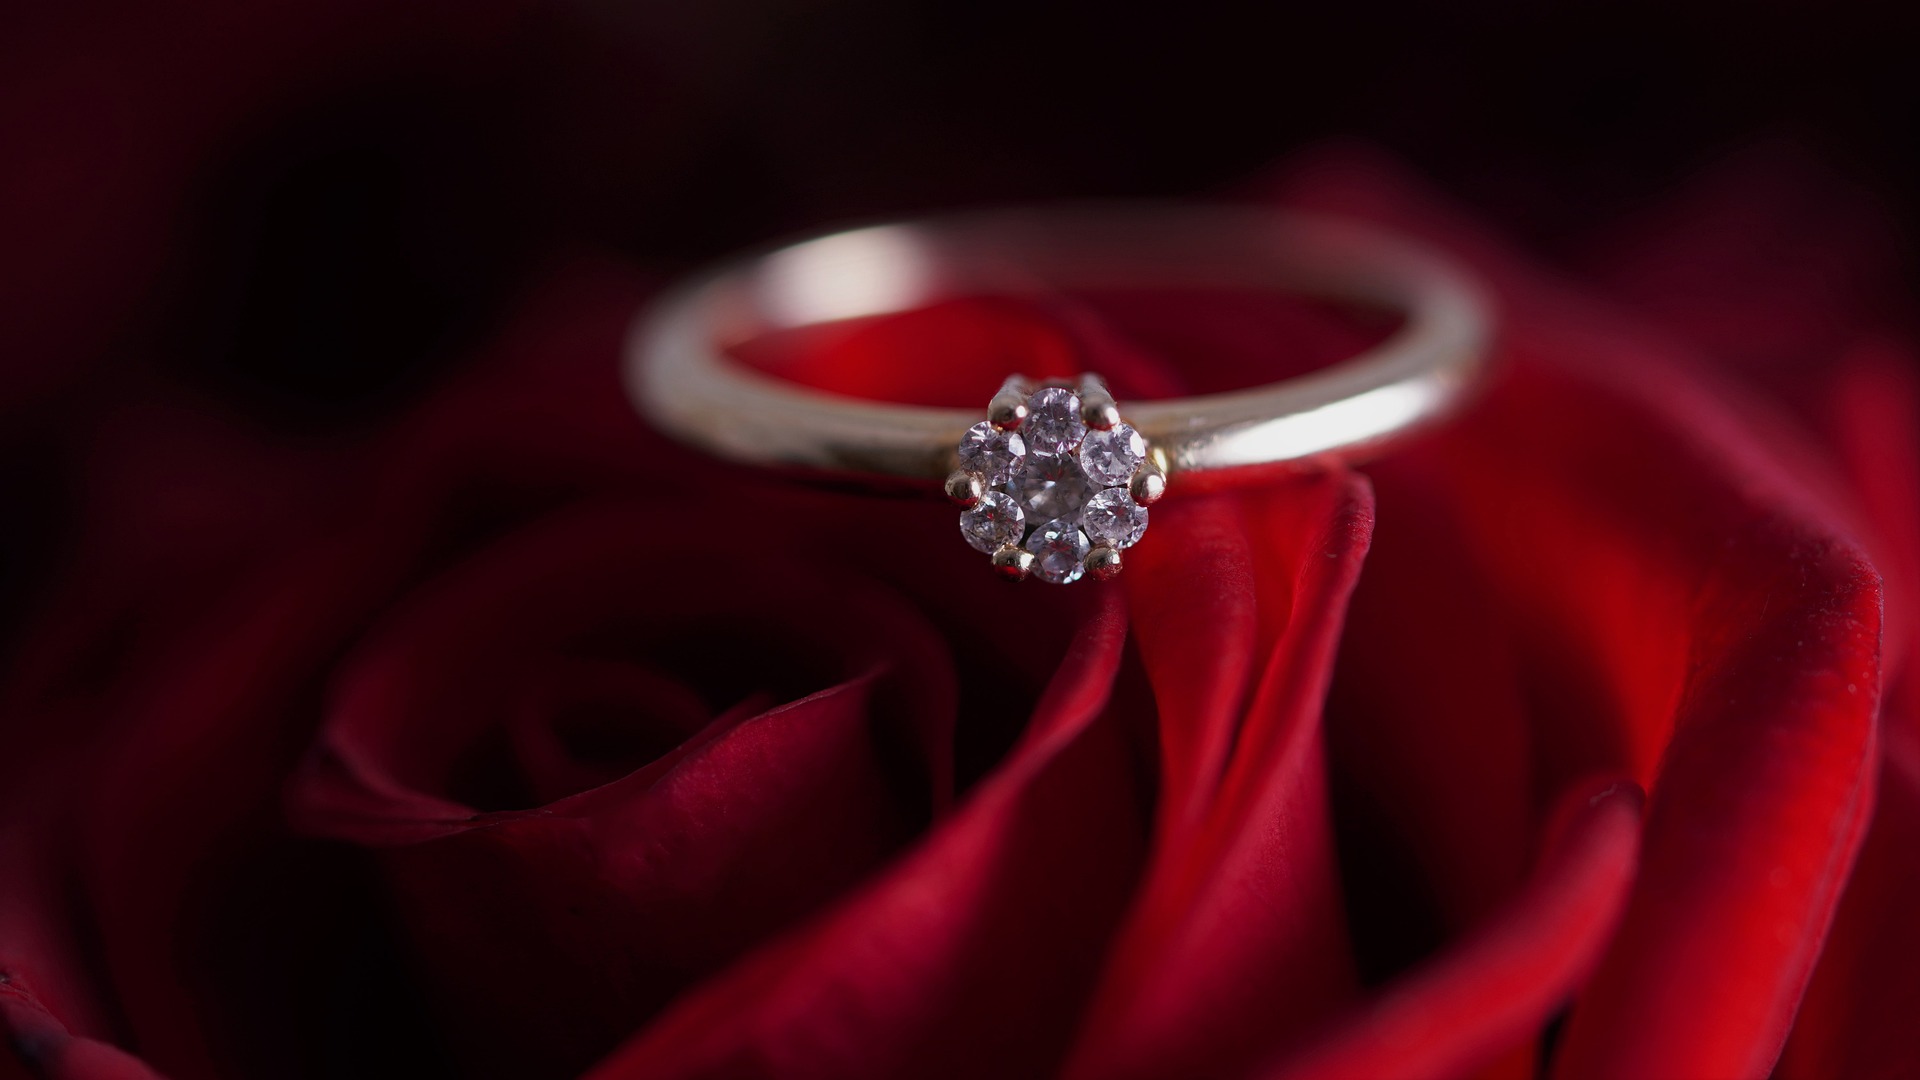 Le solitaire, un anneau surmonté d'un diamant pour une demande en mariage magique